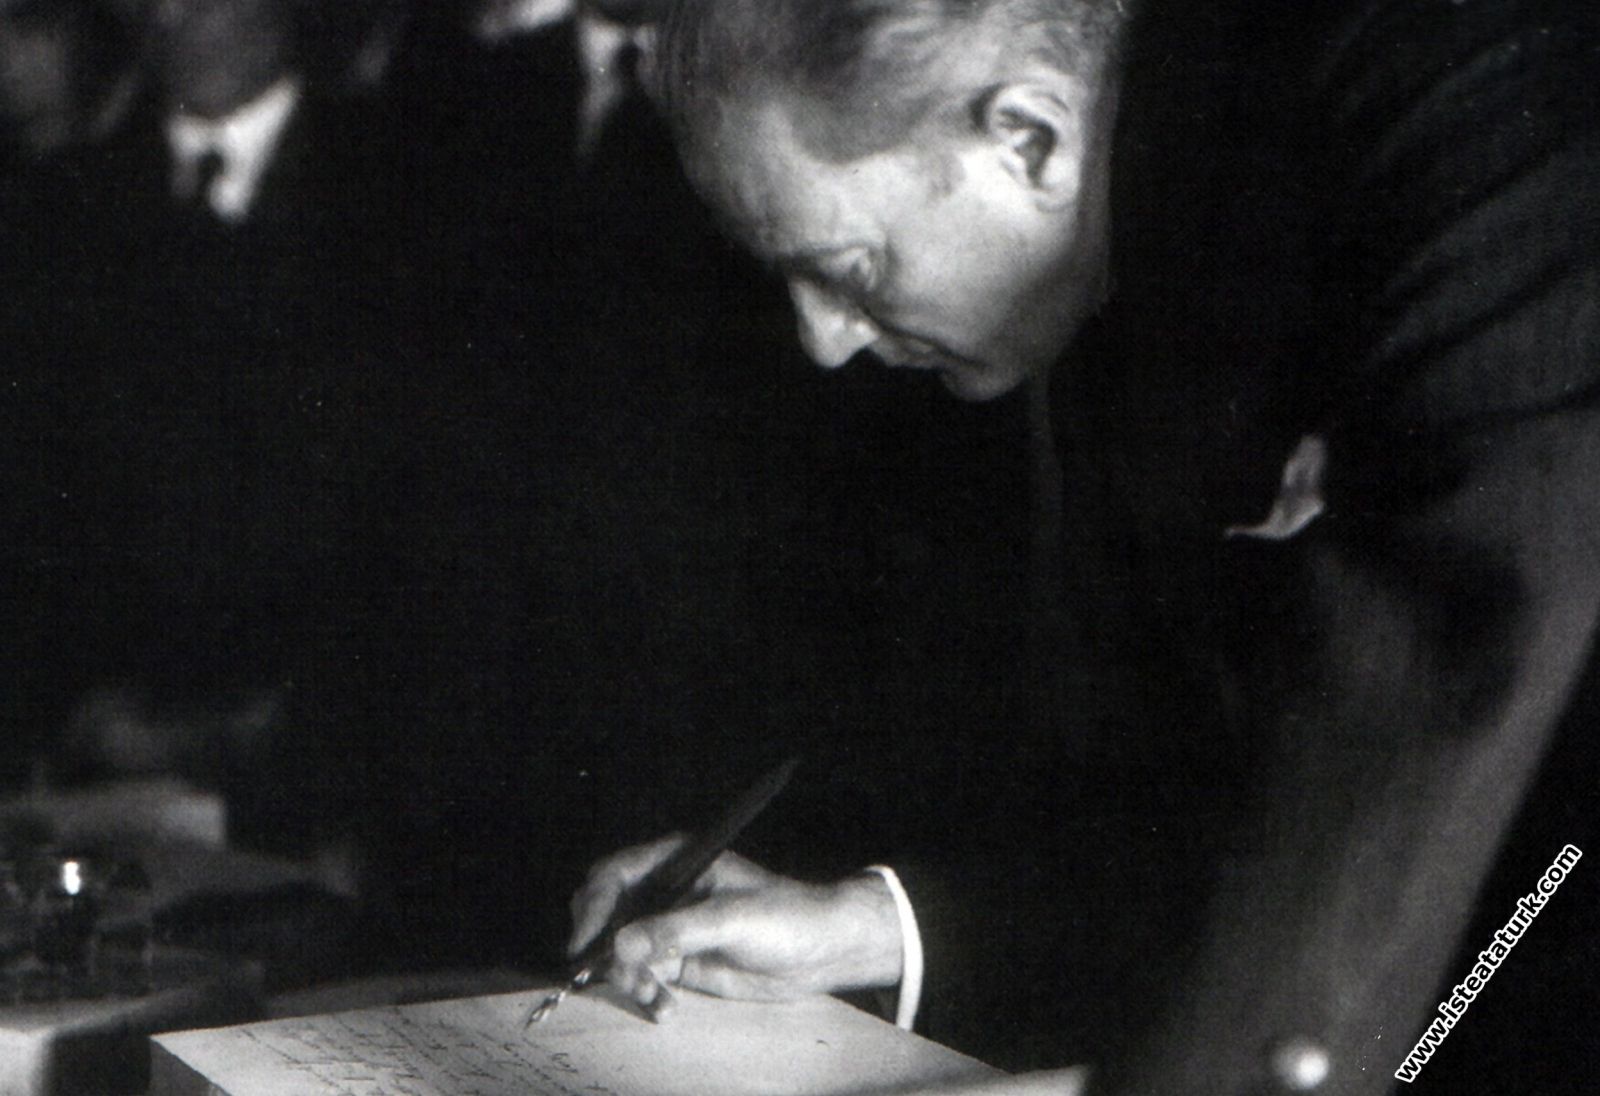 Mustafa Kemal Atatürk İstanbul Üniversitesi (Darülfünun) Hatıra Defteri’nin ilk sahifesine yazarken. (15 Aralık 1930)